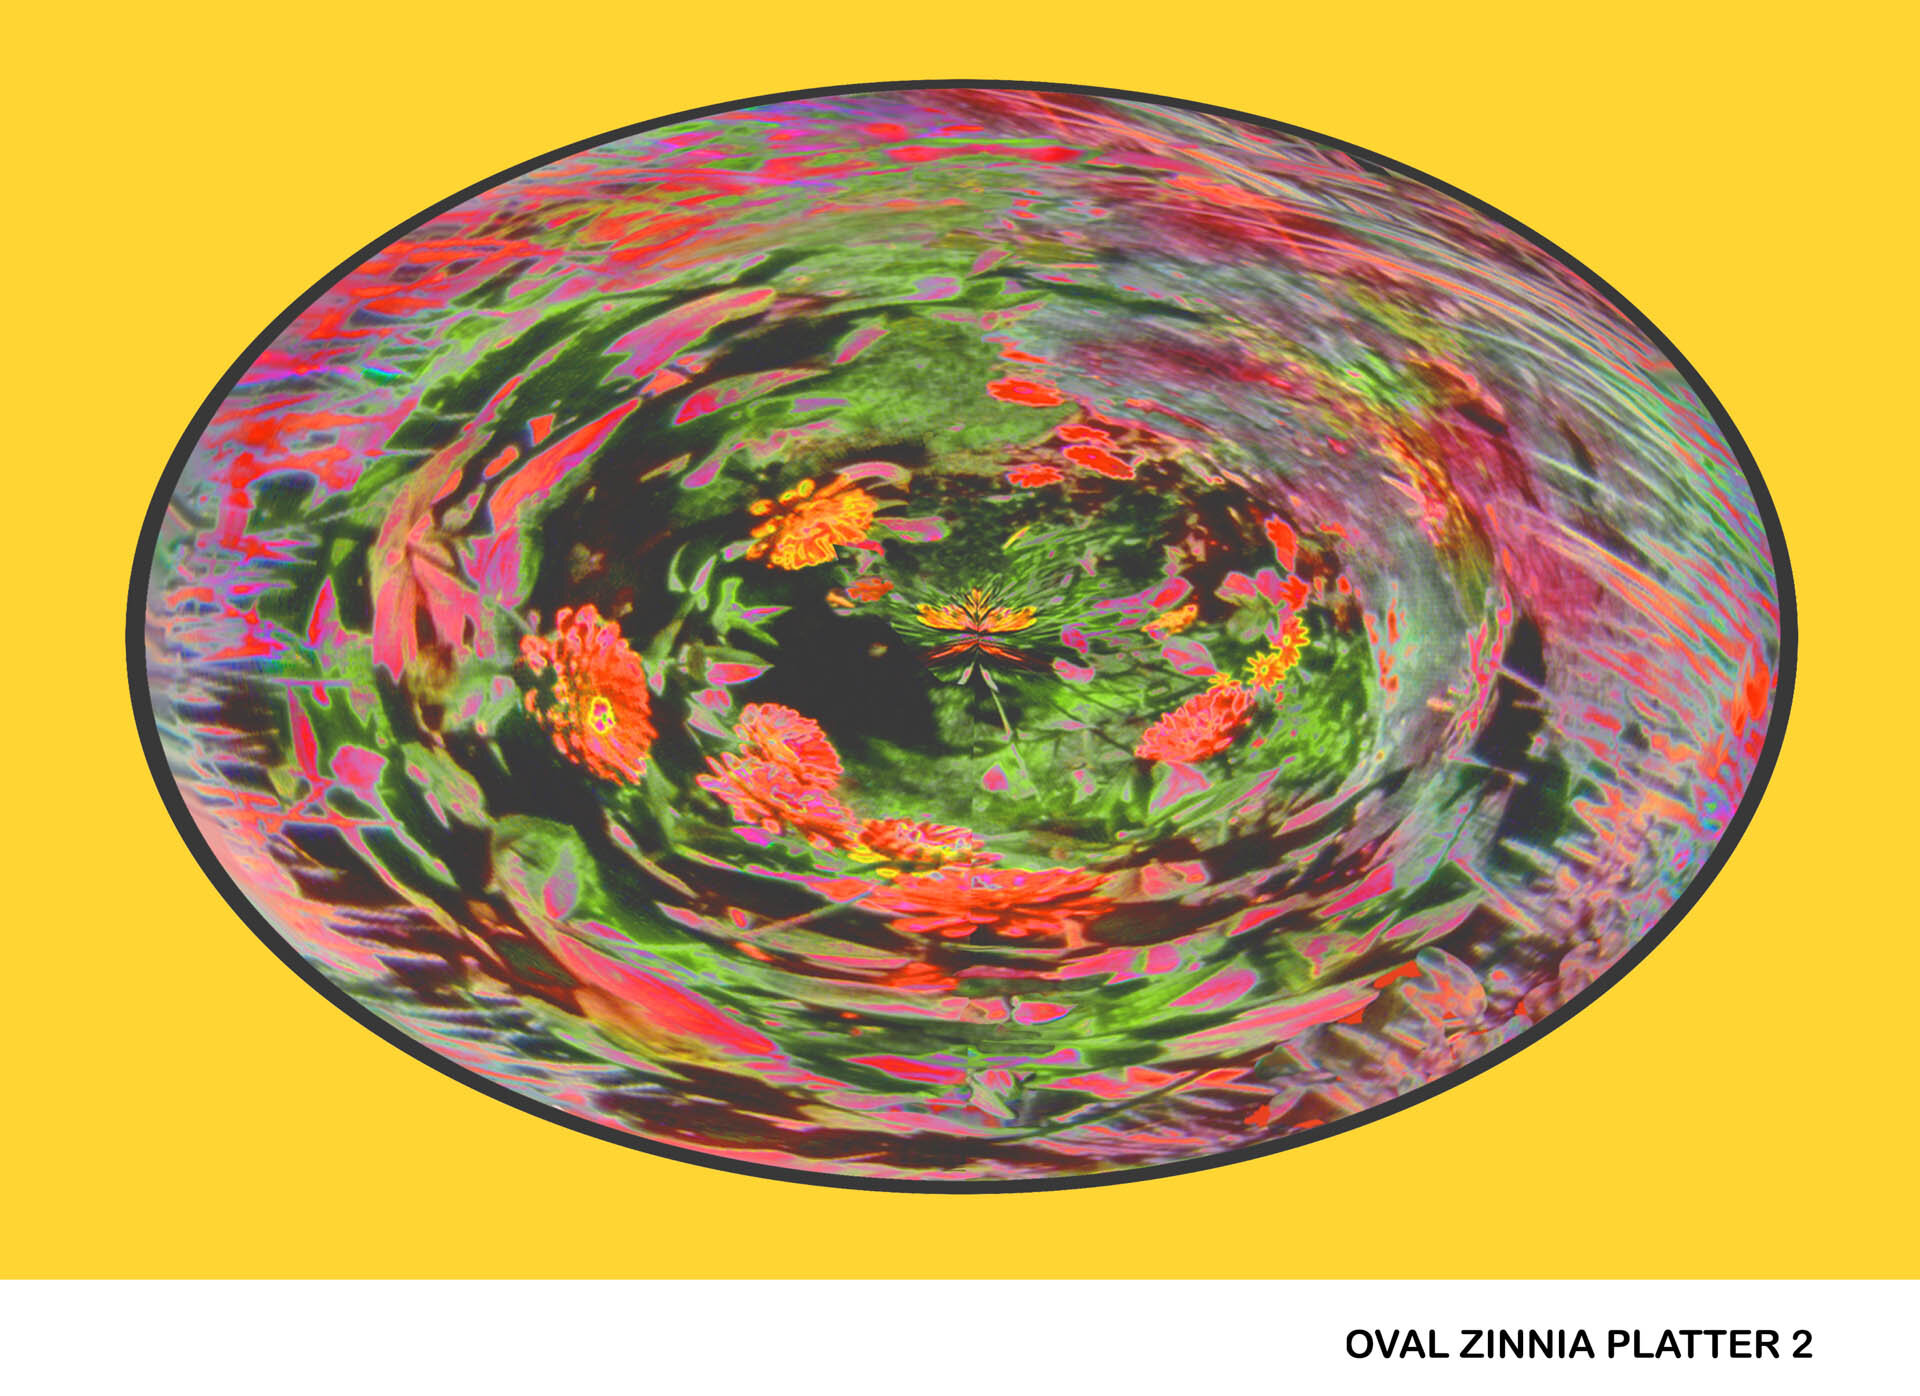 Oval Zinnia Platter 2 Titled.jpg